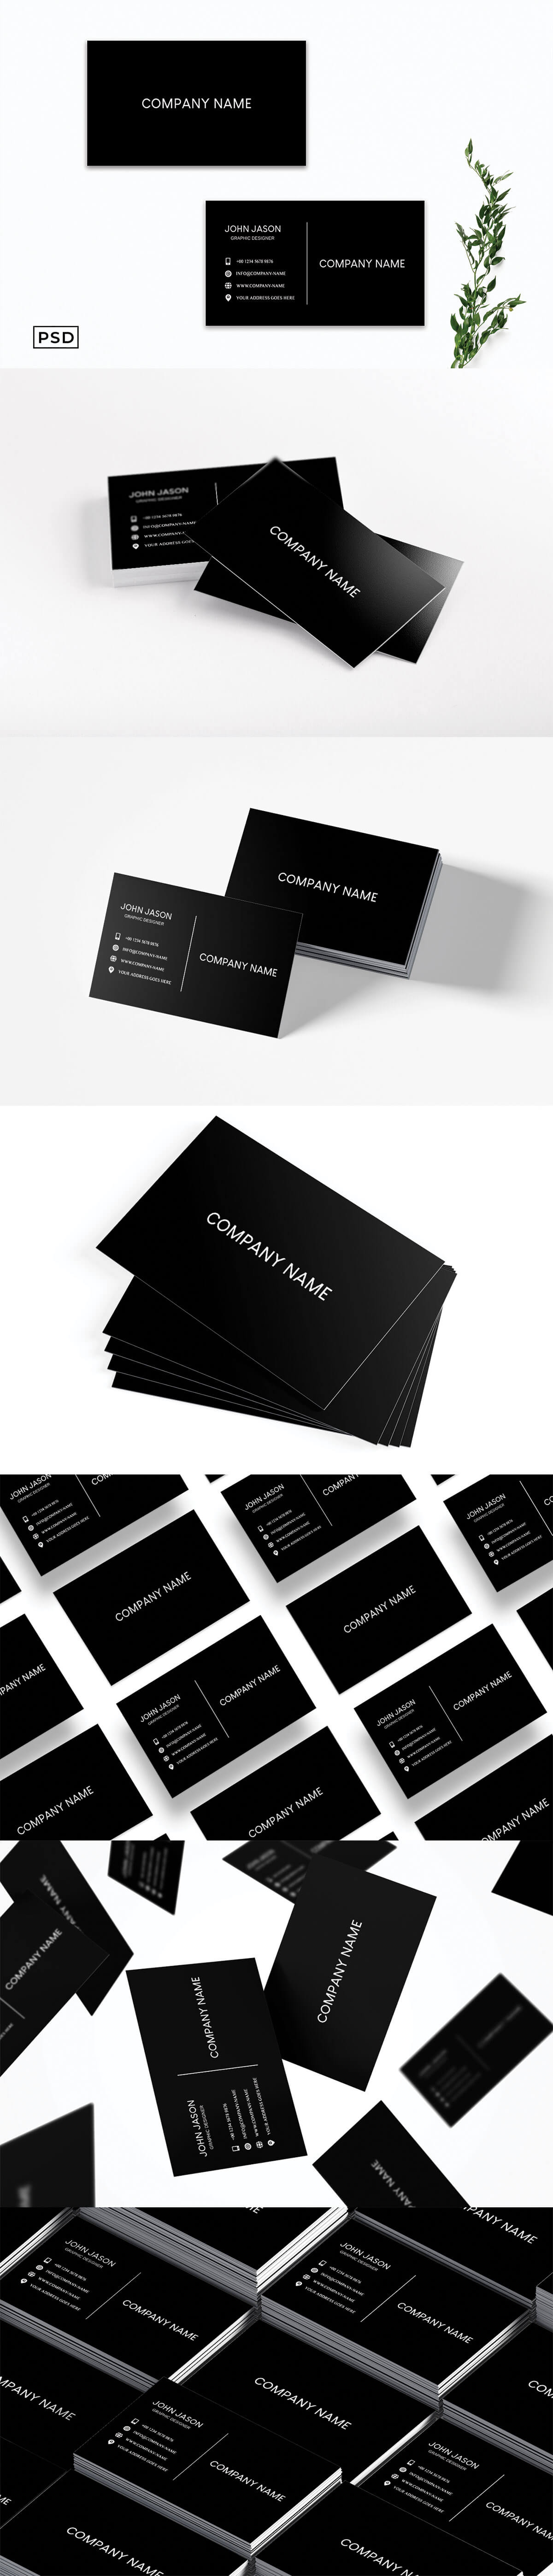 Free Simple Black Minimalist Business Card Template